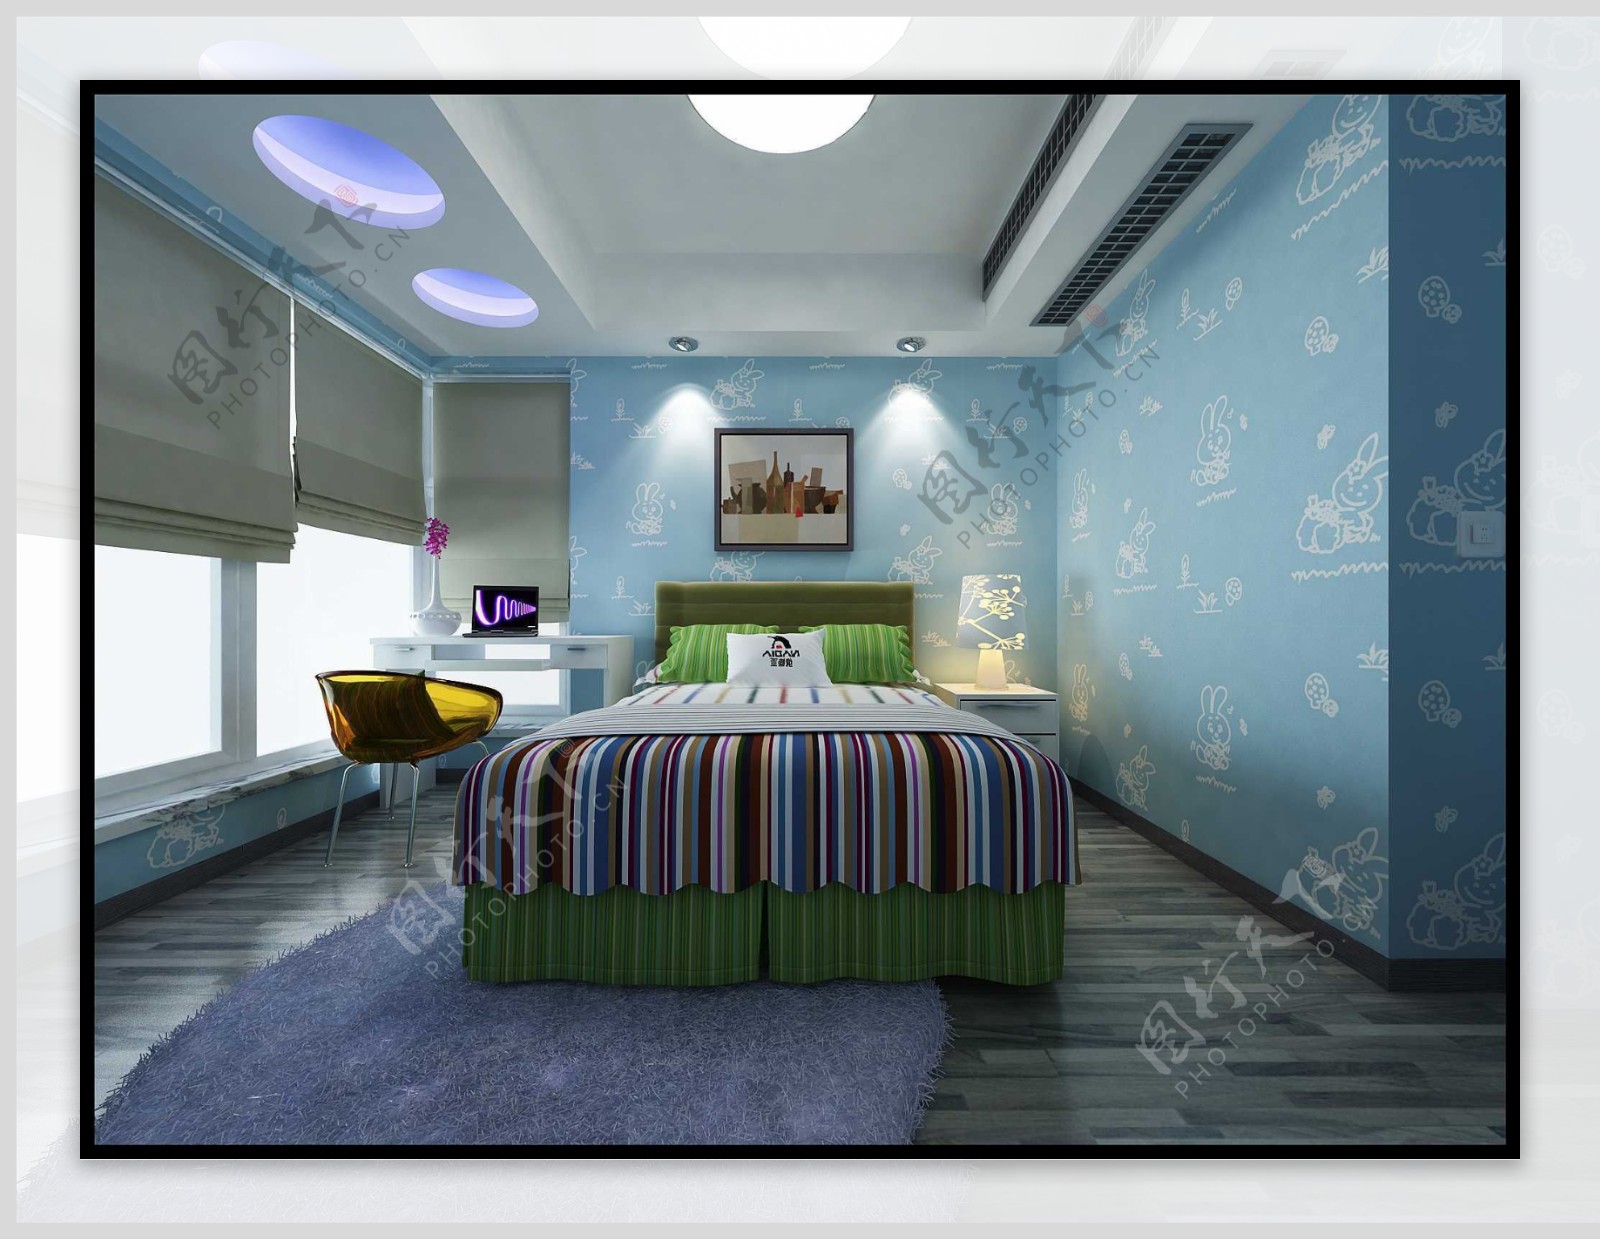 现代风格的卧室用淡蓝色与白色来设计出撞 - 美范儿设计效果图 - 躺平设计家